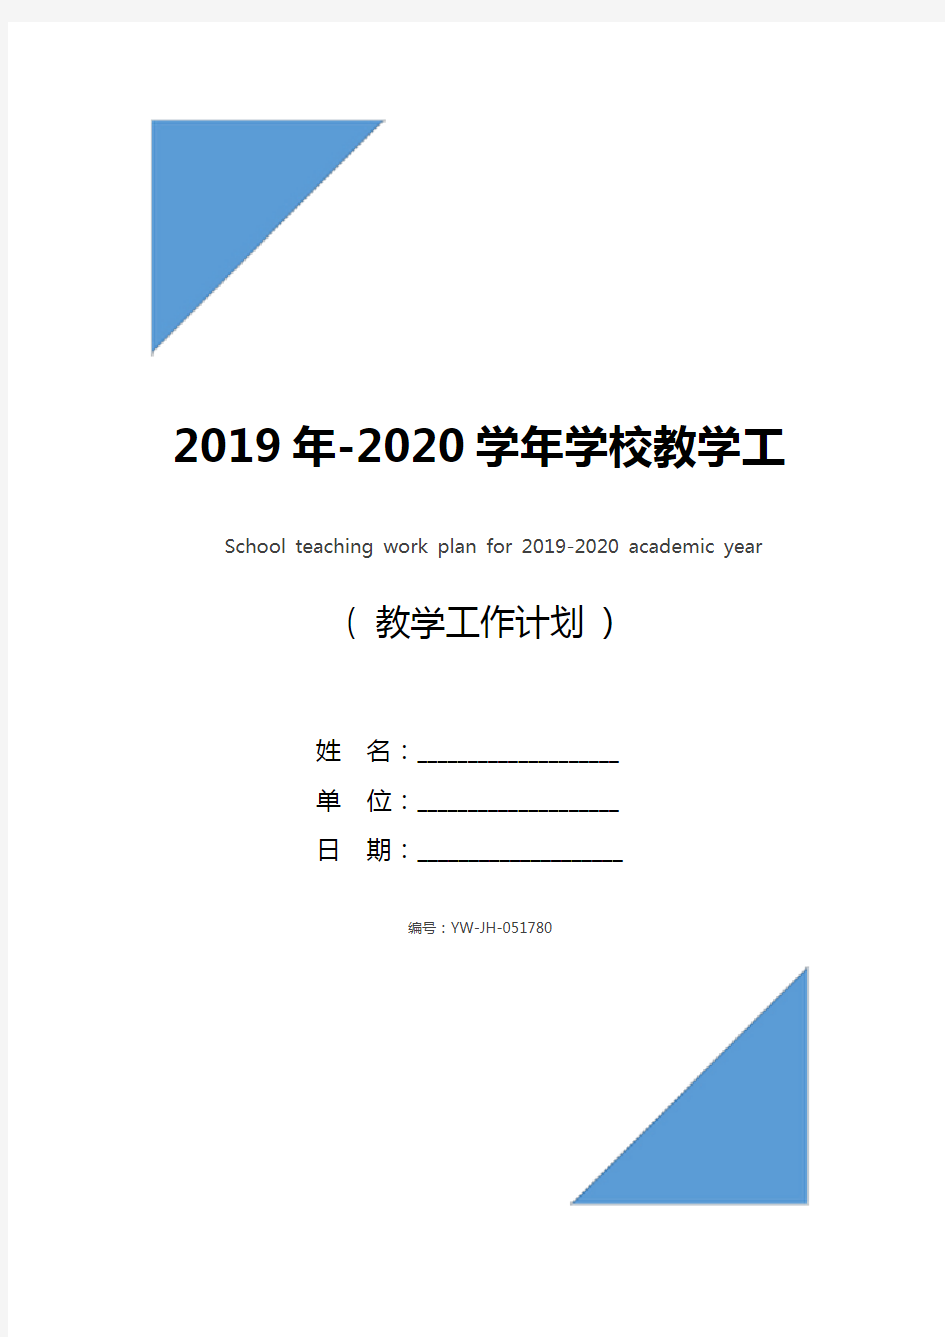 2019年-2020学年学校教学工作计划